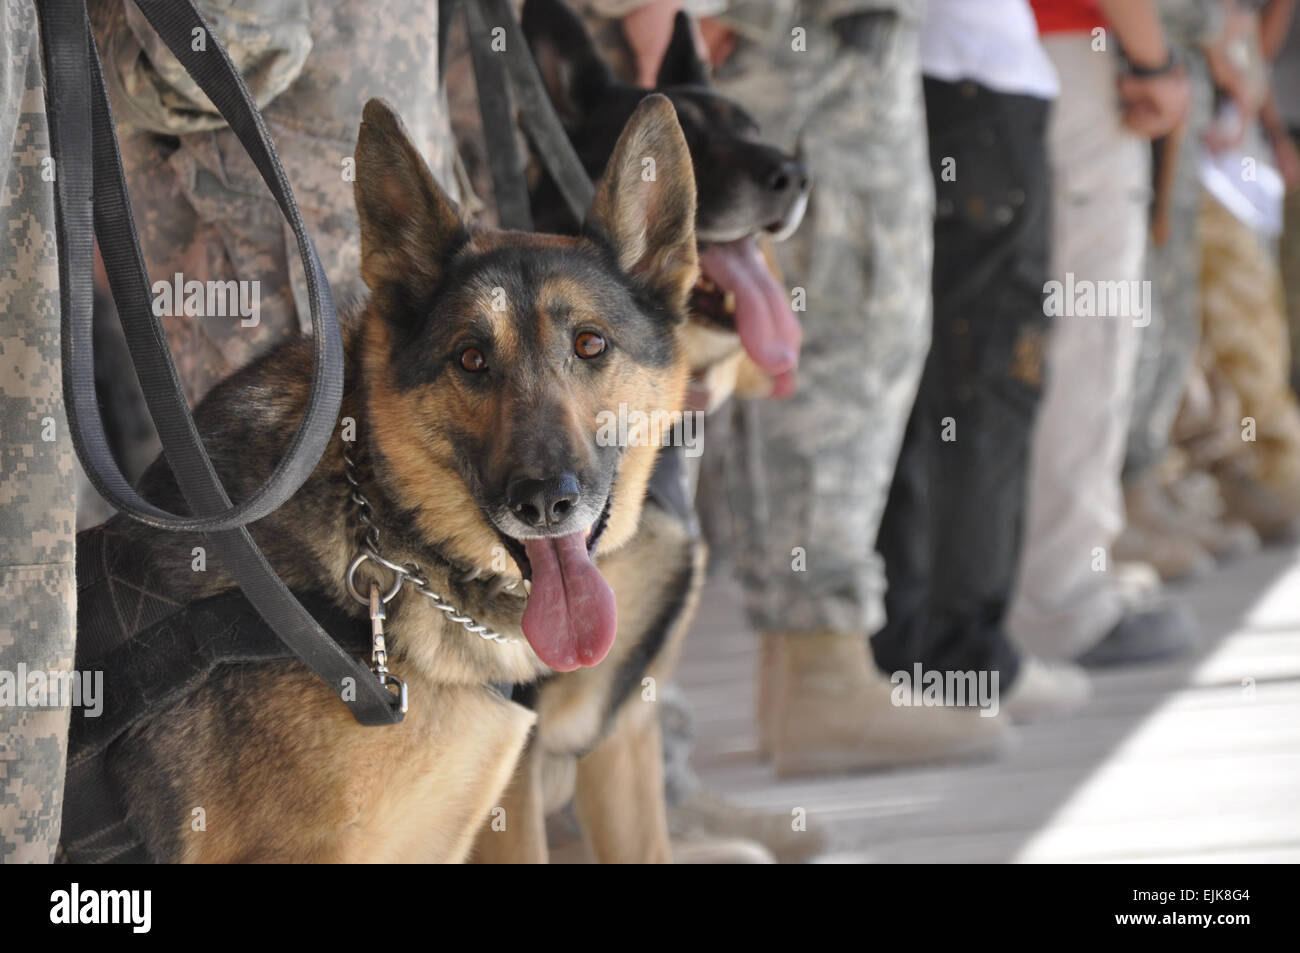 États-unis et de la coalition des civils, militaires, les conducteurs de chien de travail militaire et leurs chiens se sont rencontrés lors d'une cérémonie le 16 octobre pour dévoiler le chien de guerre memorial construit à la KAF boardwalk en l'honneur de chiens de travail militaire tué ici dans l'exercice de leurs fonctions. Les troupes de Kandahar, les civils honneur le meilleur ami de l'homme /-news/2009/10/30/29572-kandahar - troupes-civils - honneur-mans-meilleur-ami/ Banque D'Images